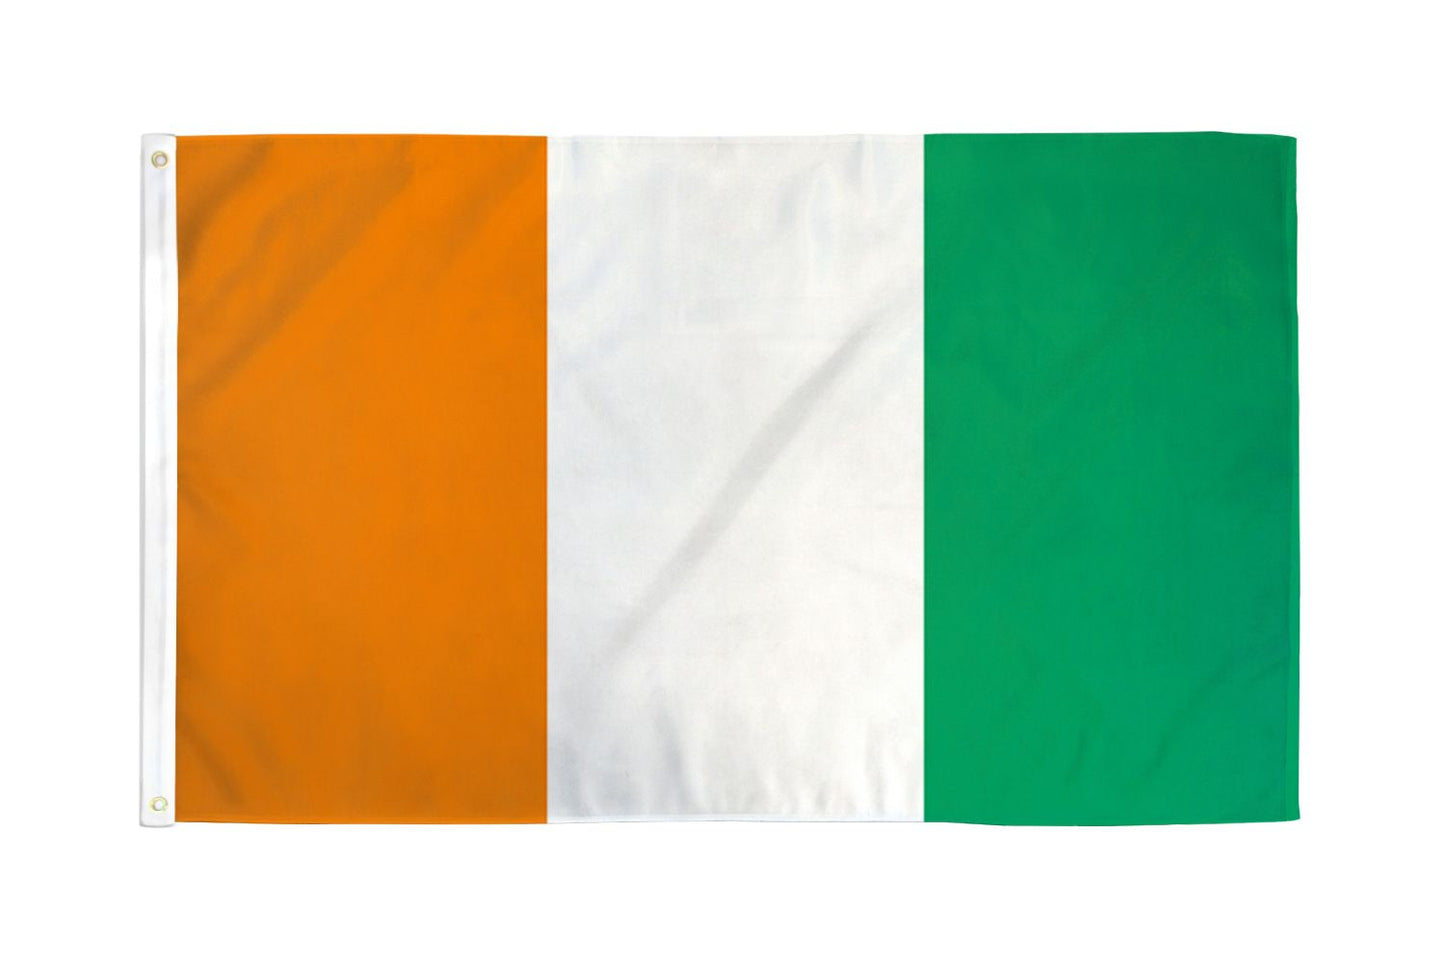 Cote D'Ivoire (Ivory Coast) Flag - 3x5ft